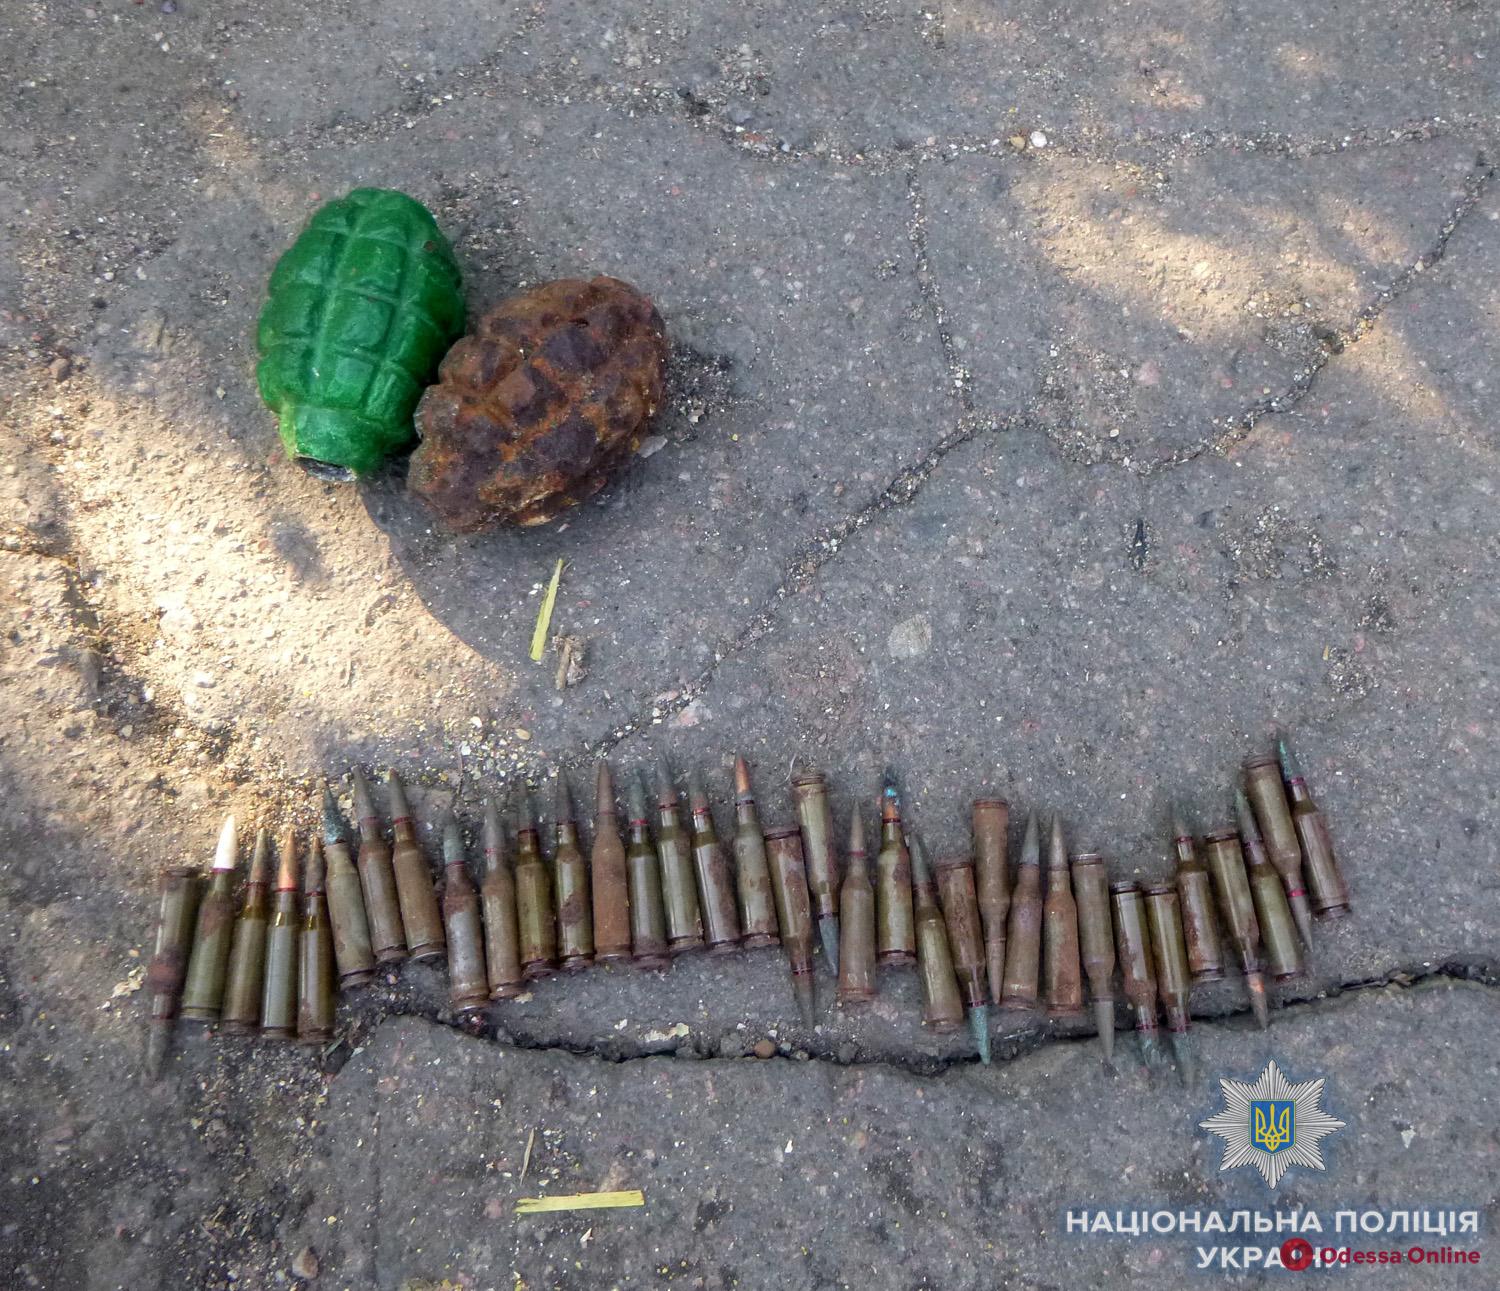 Нашел на помойке: в Одесской области задержали парня с гранатами и патронами